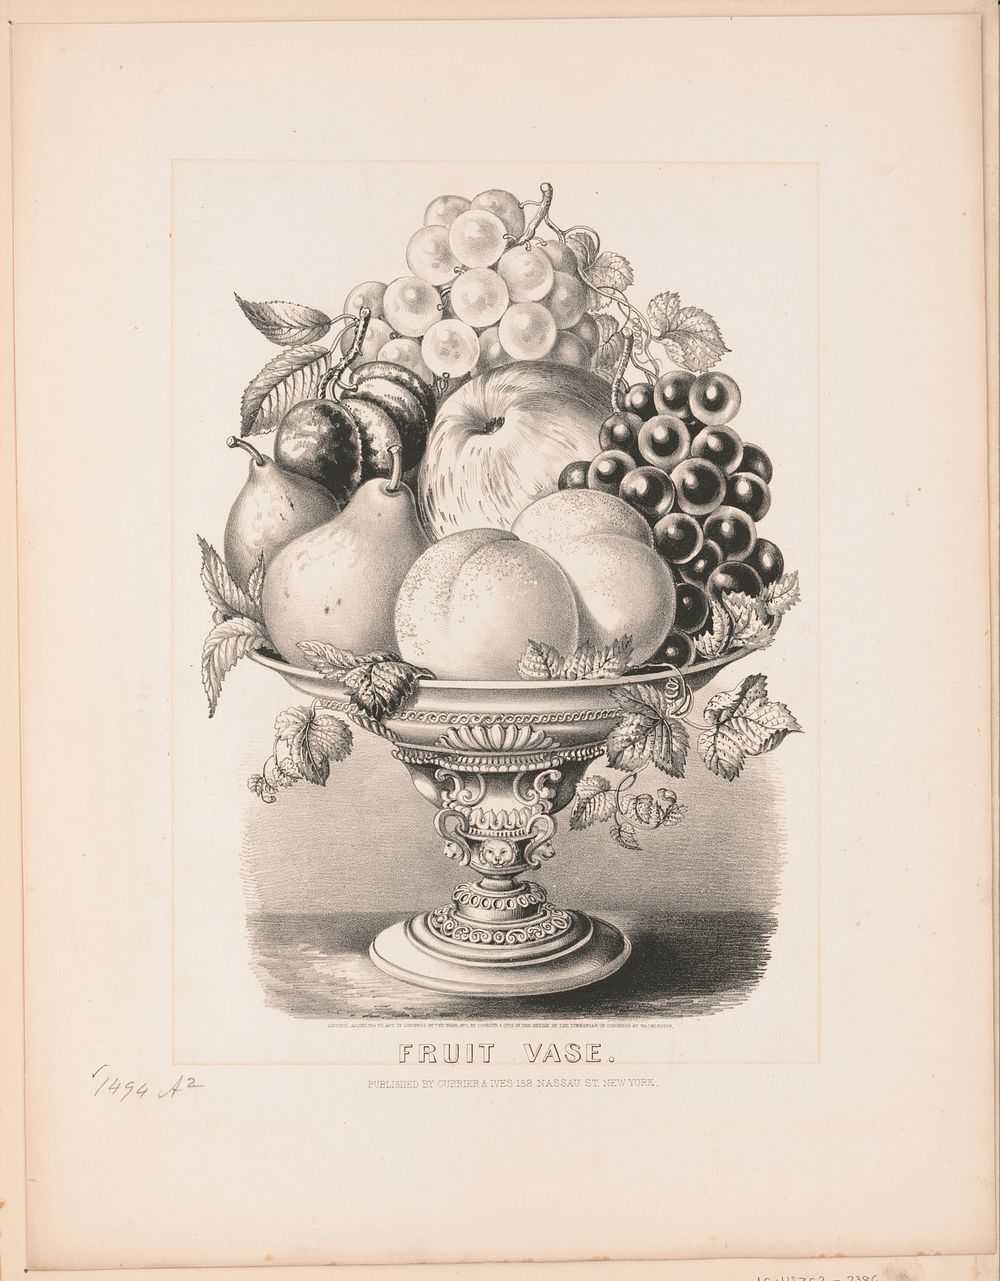 Fruit vase (1870) by Currier & Ives